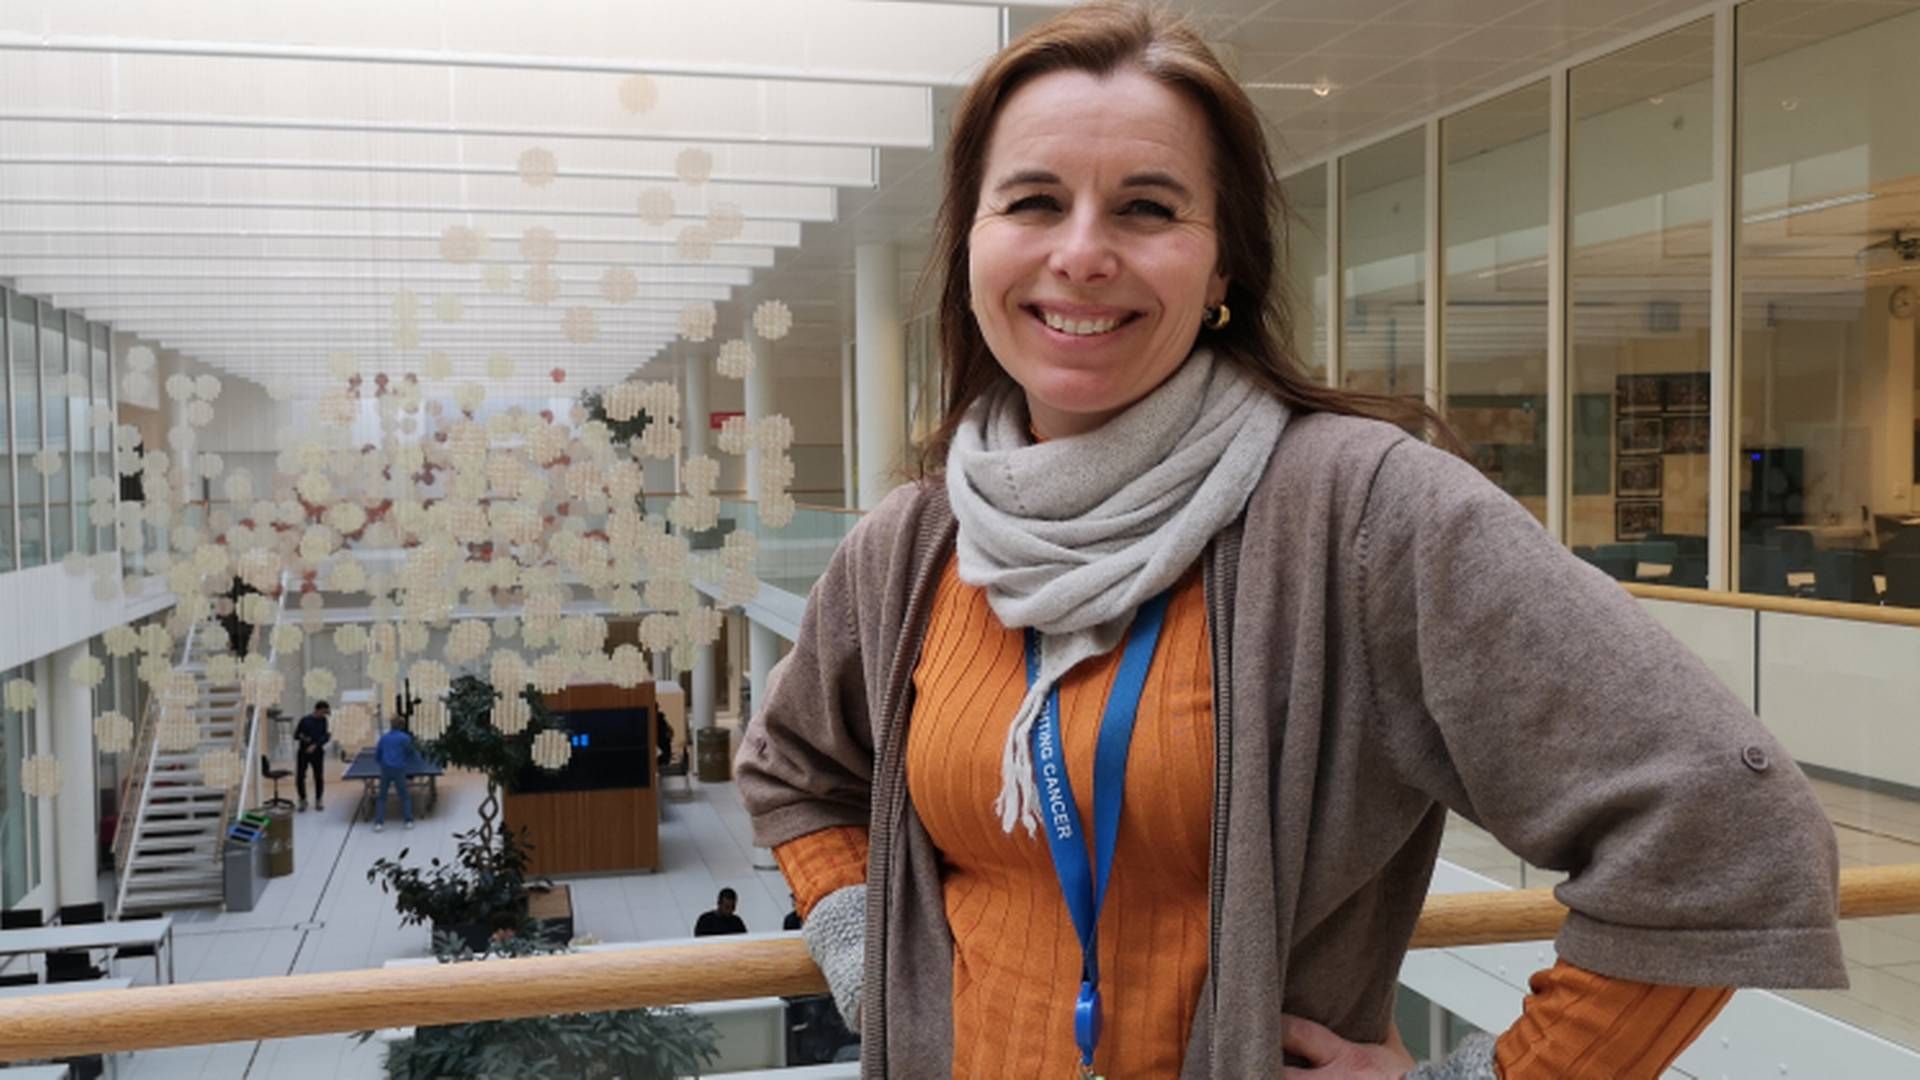 ETABLERER NYTT SELSKAP: Men det er ikke alltid så lett å være både forsker og gründer samtidig, ifølge Anette Weyergang. – Det er som å ha to fulltidsjobber, sier hun. | Foto: Oslo Cancer Cluster